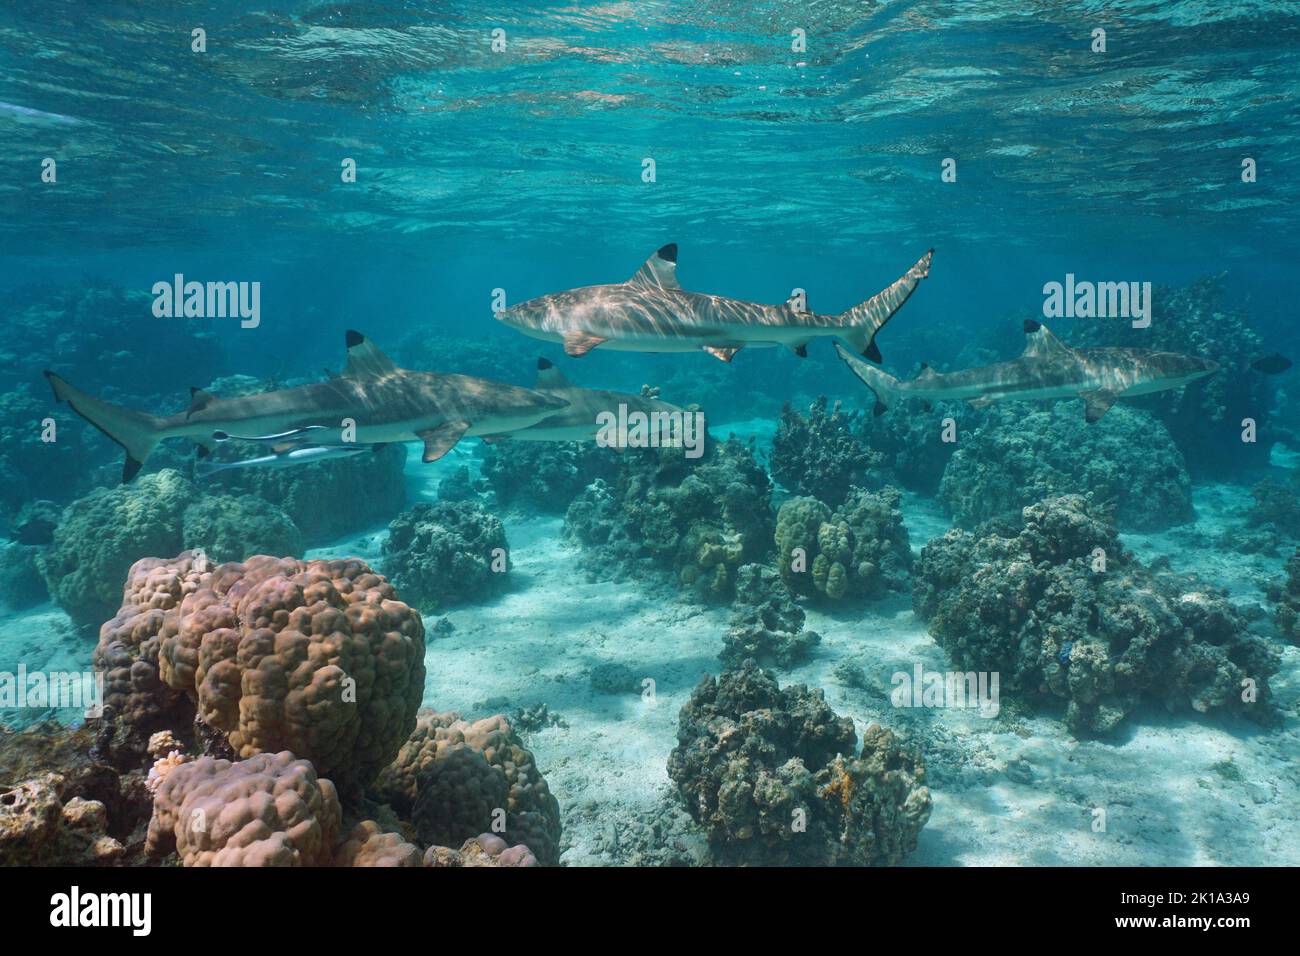 Plusieurs requins de récif à pointe noire dans l'océan, paysages marins, Pacifique sud, Polynésie française Banque D'Images